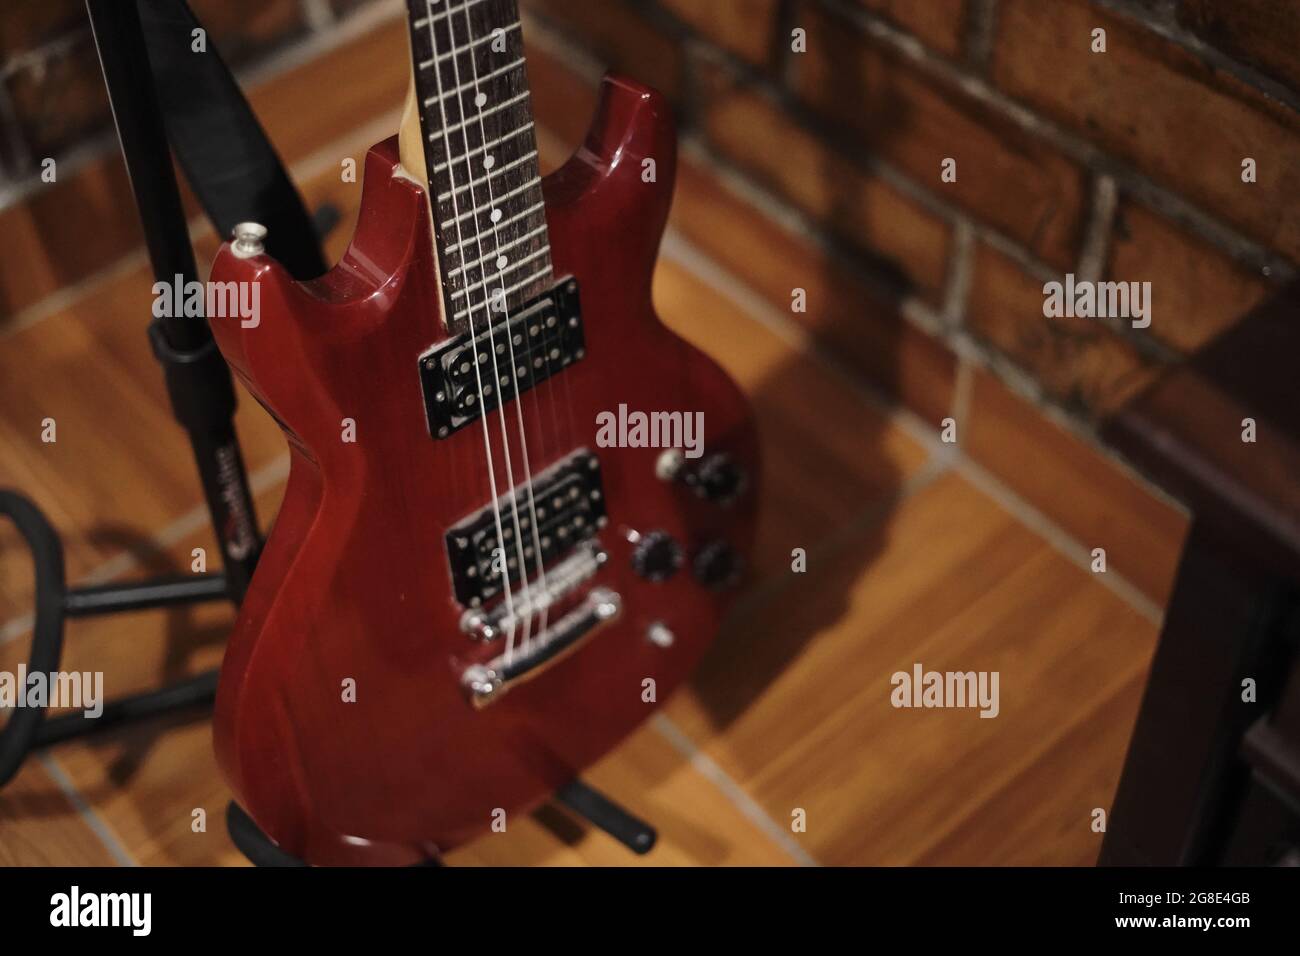 Guitarra eléctrica roja, Red electric guitar. Stock Photo